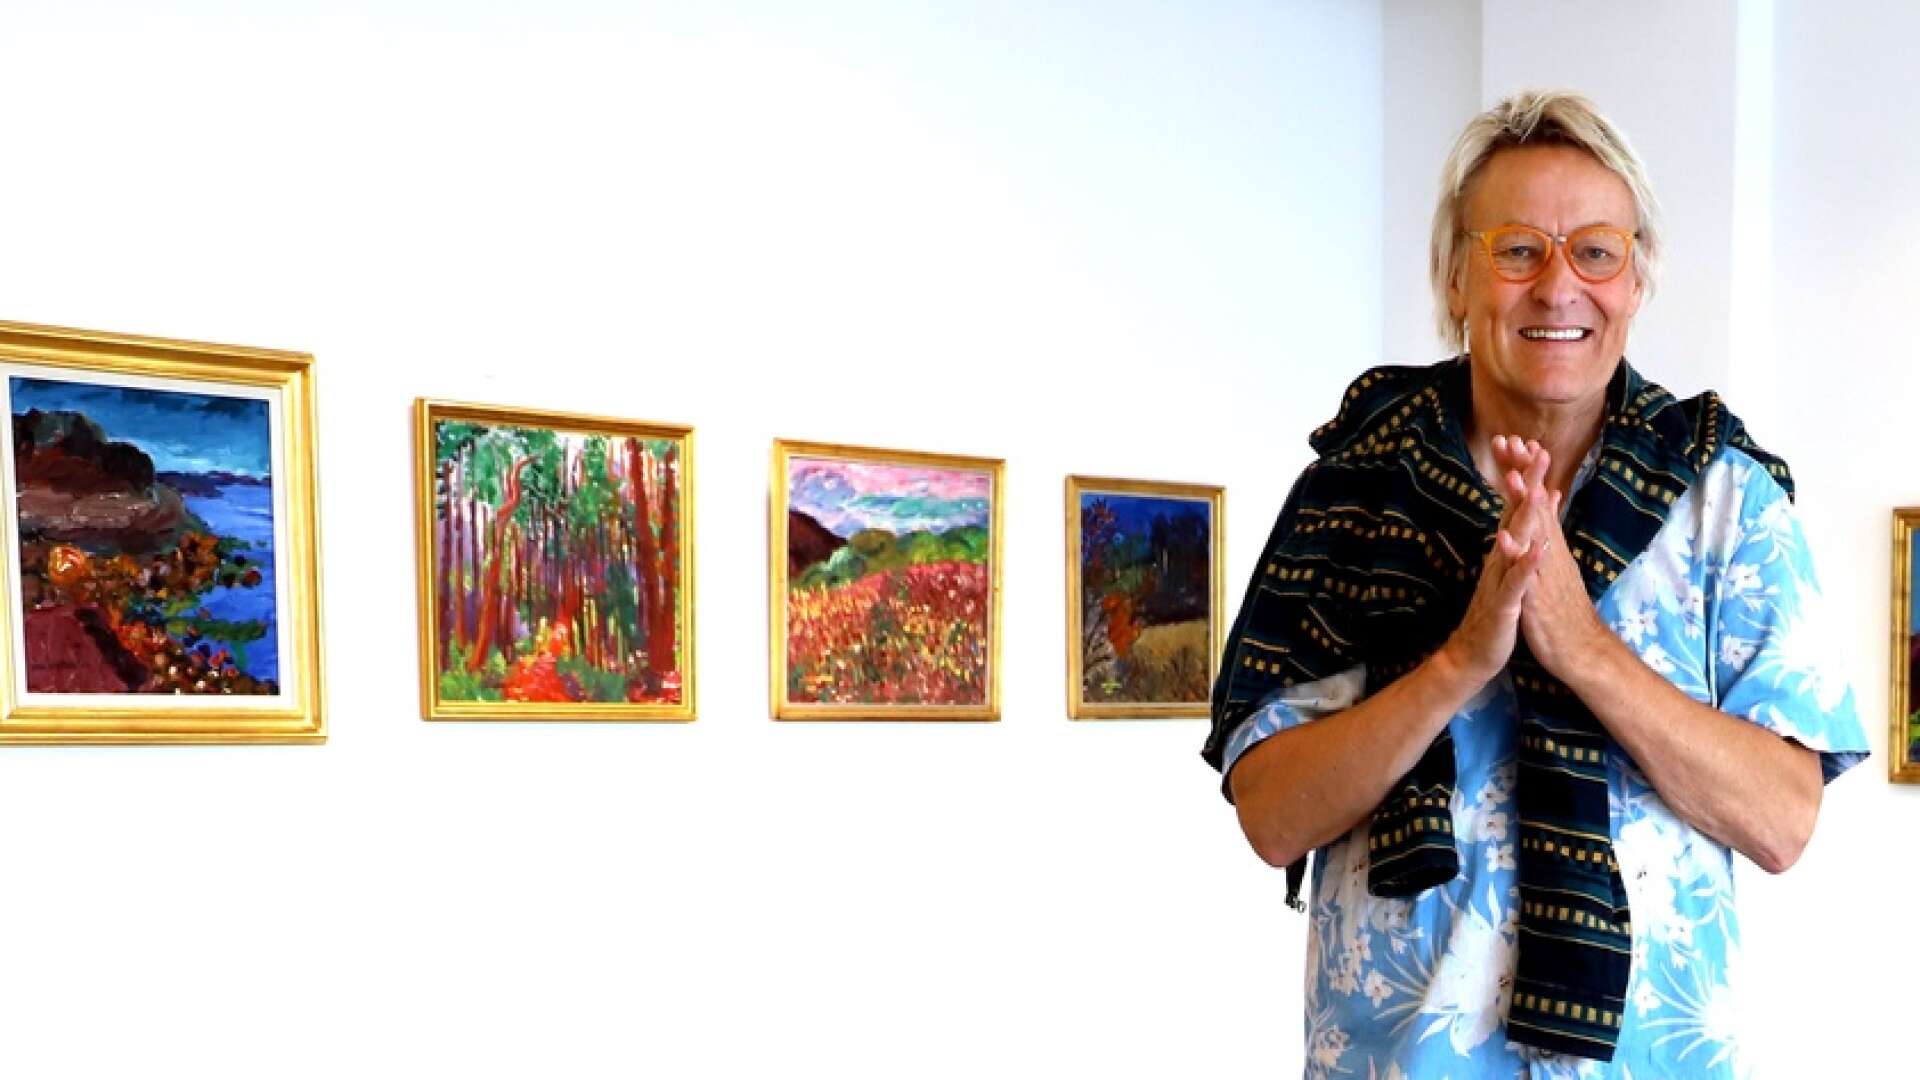 Lars Lerin ställer ut ett stort antal verk av Inge Schiöler, som är en av hans stora förebilder i konsten. Utställningen har vernissage på Sandgrund på lördag, den 11 september, och pågår till och med maj nästa år.